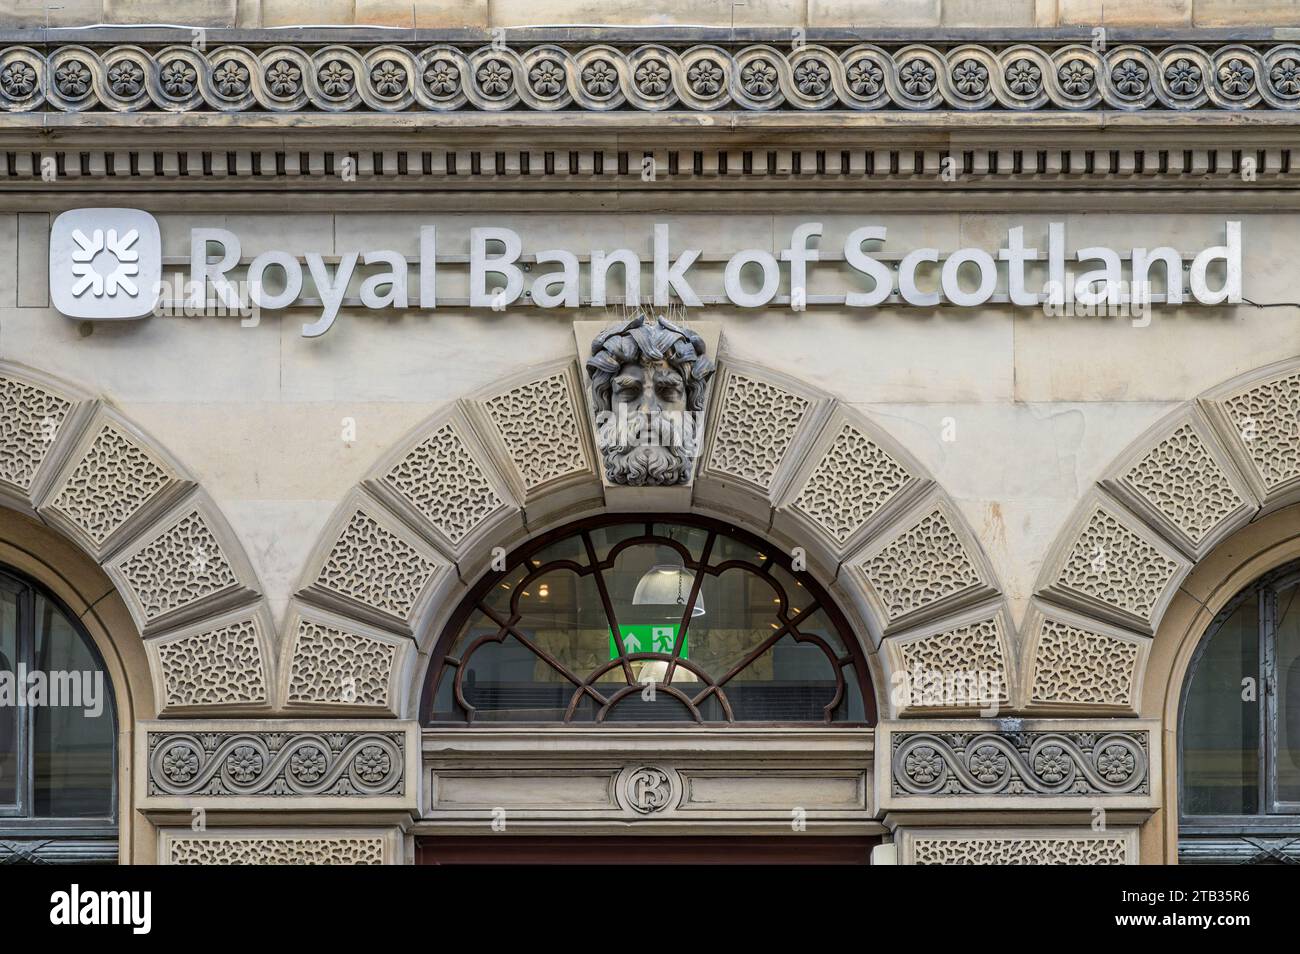 Royal Bank of Scotland signe, Glasgow, Écosse, Royaume-Uni, Europe Banque D'Images